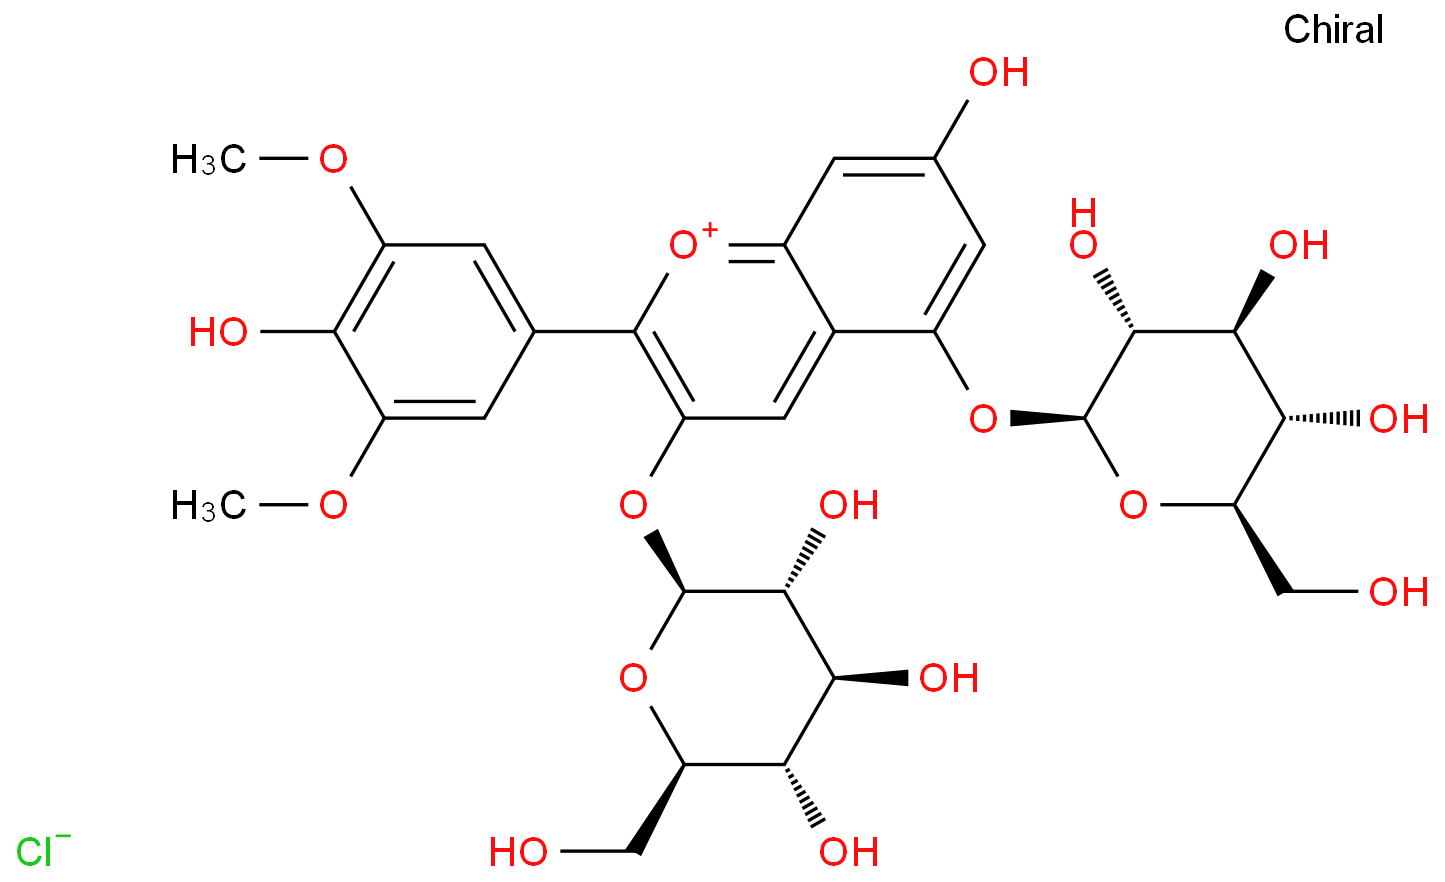 酒石酸的内消旋体有对称中心对硝基苯甲酸